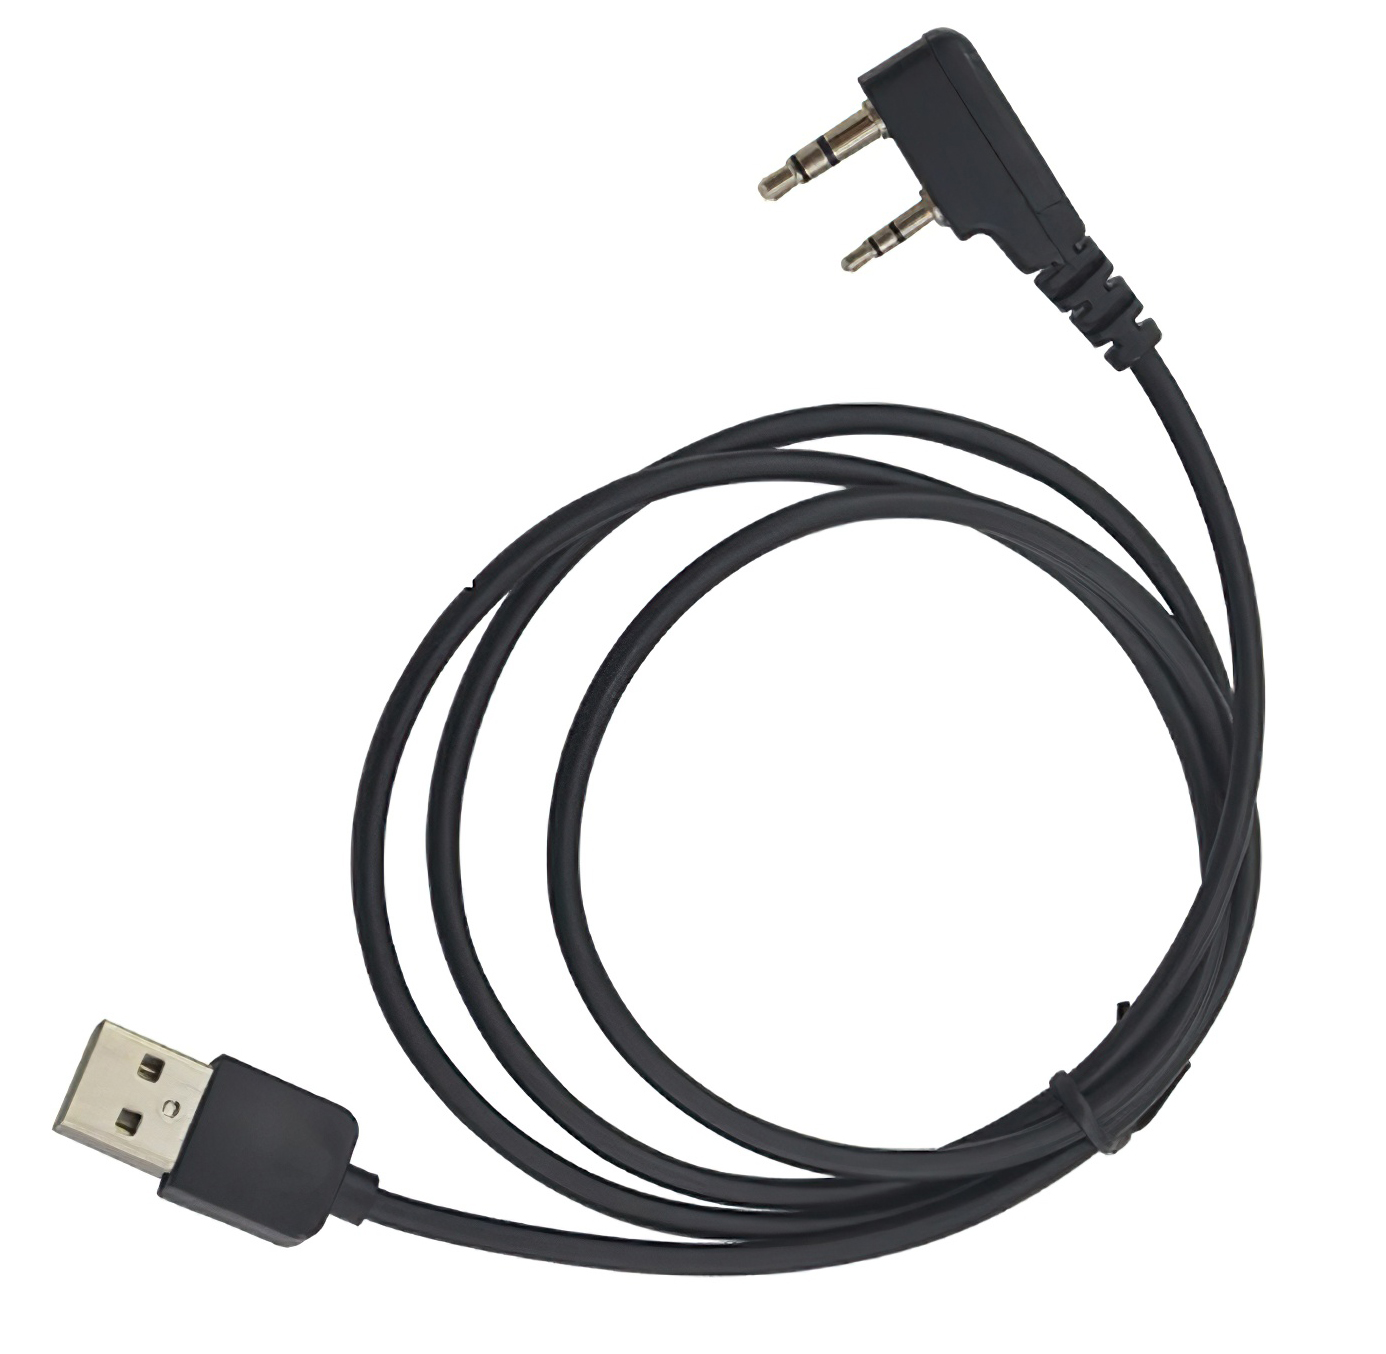 USB кабель для программирования цифровых радиостанций Baofeng DMR usb кабель и cd диск для программирования радиостанций baofeng kenwood